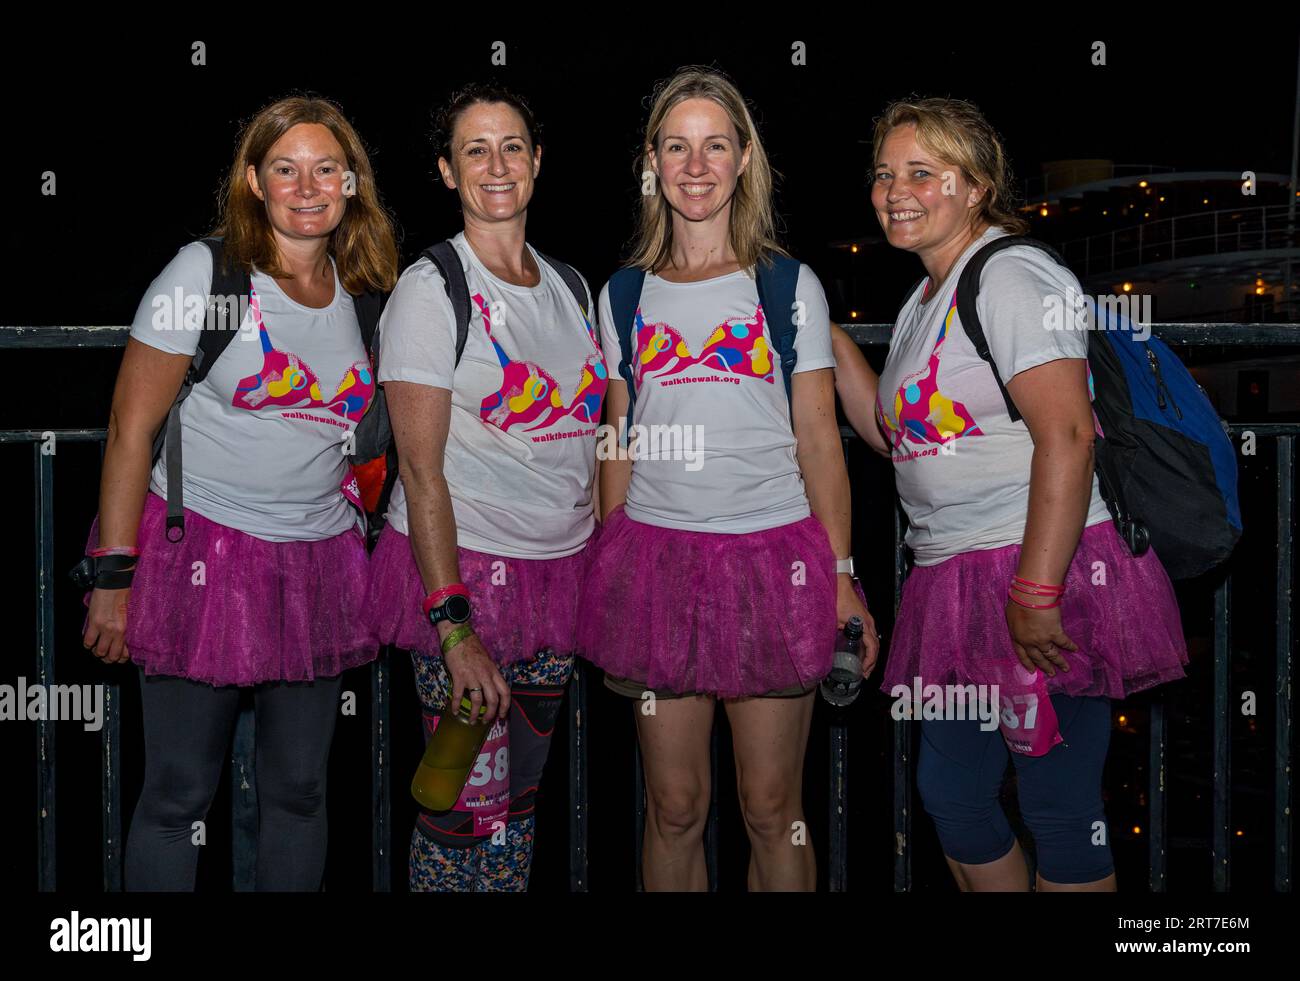 Un gruppo di quattro donne prende parte alla passeggiata lunare di Edimburgo, fermandosi per una foto a Leith sulla rotta della maratona, Scozia, Regno Unito Foto Stock